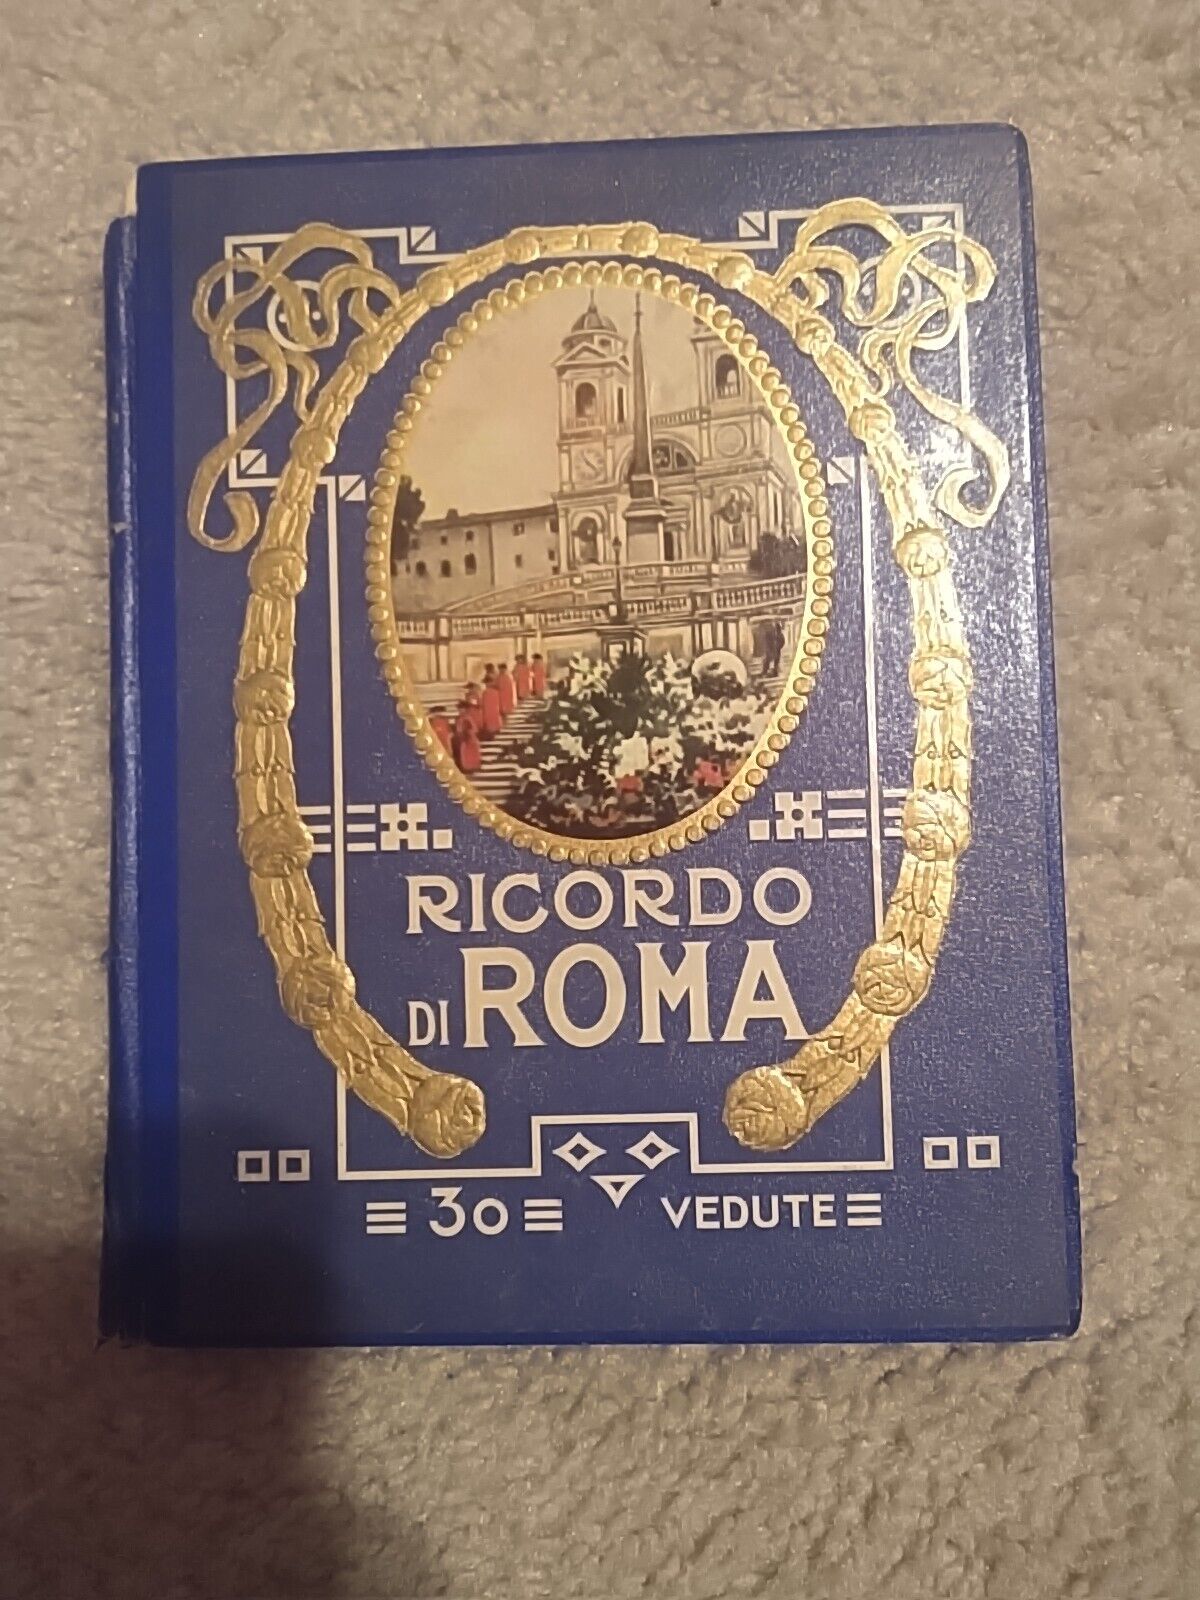 Ricardo Di Roma Souvenir Picture Book